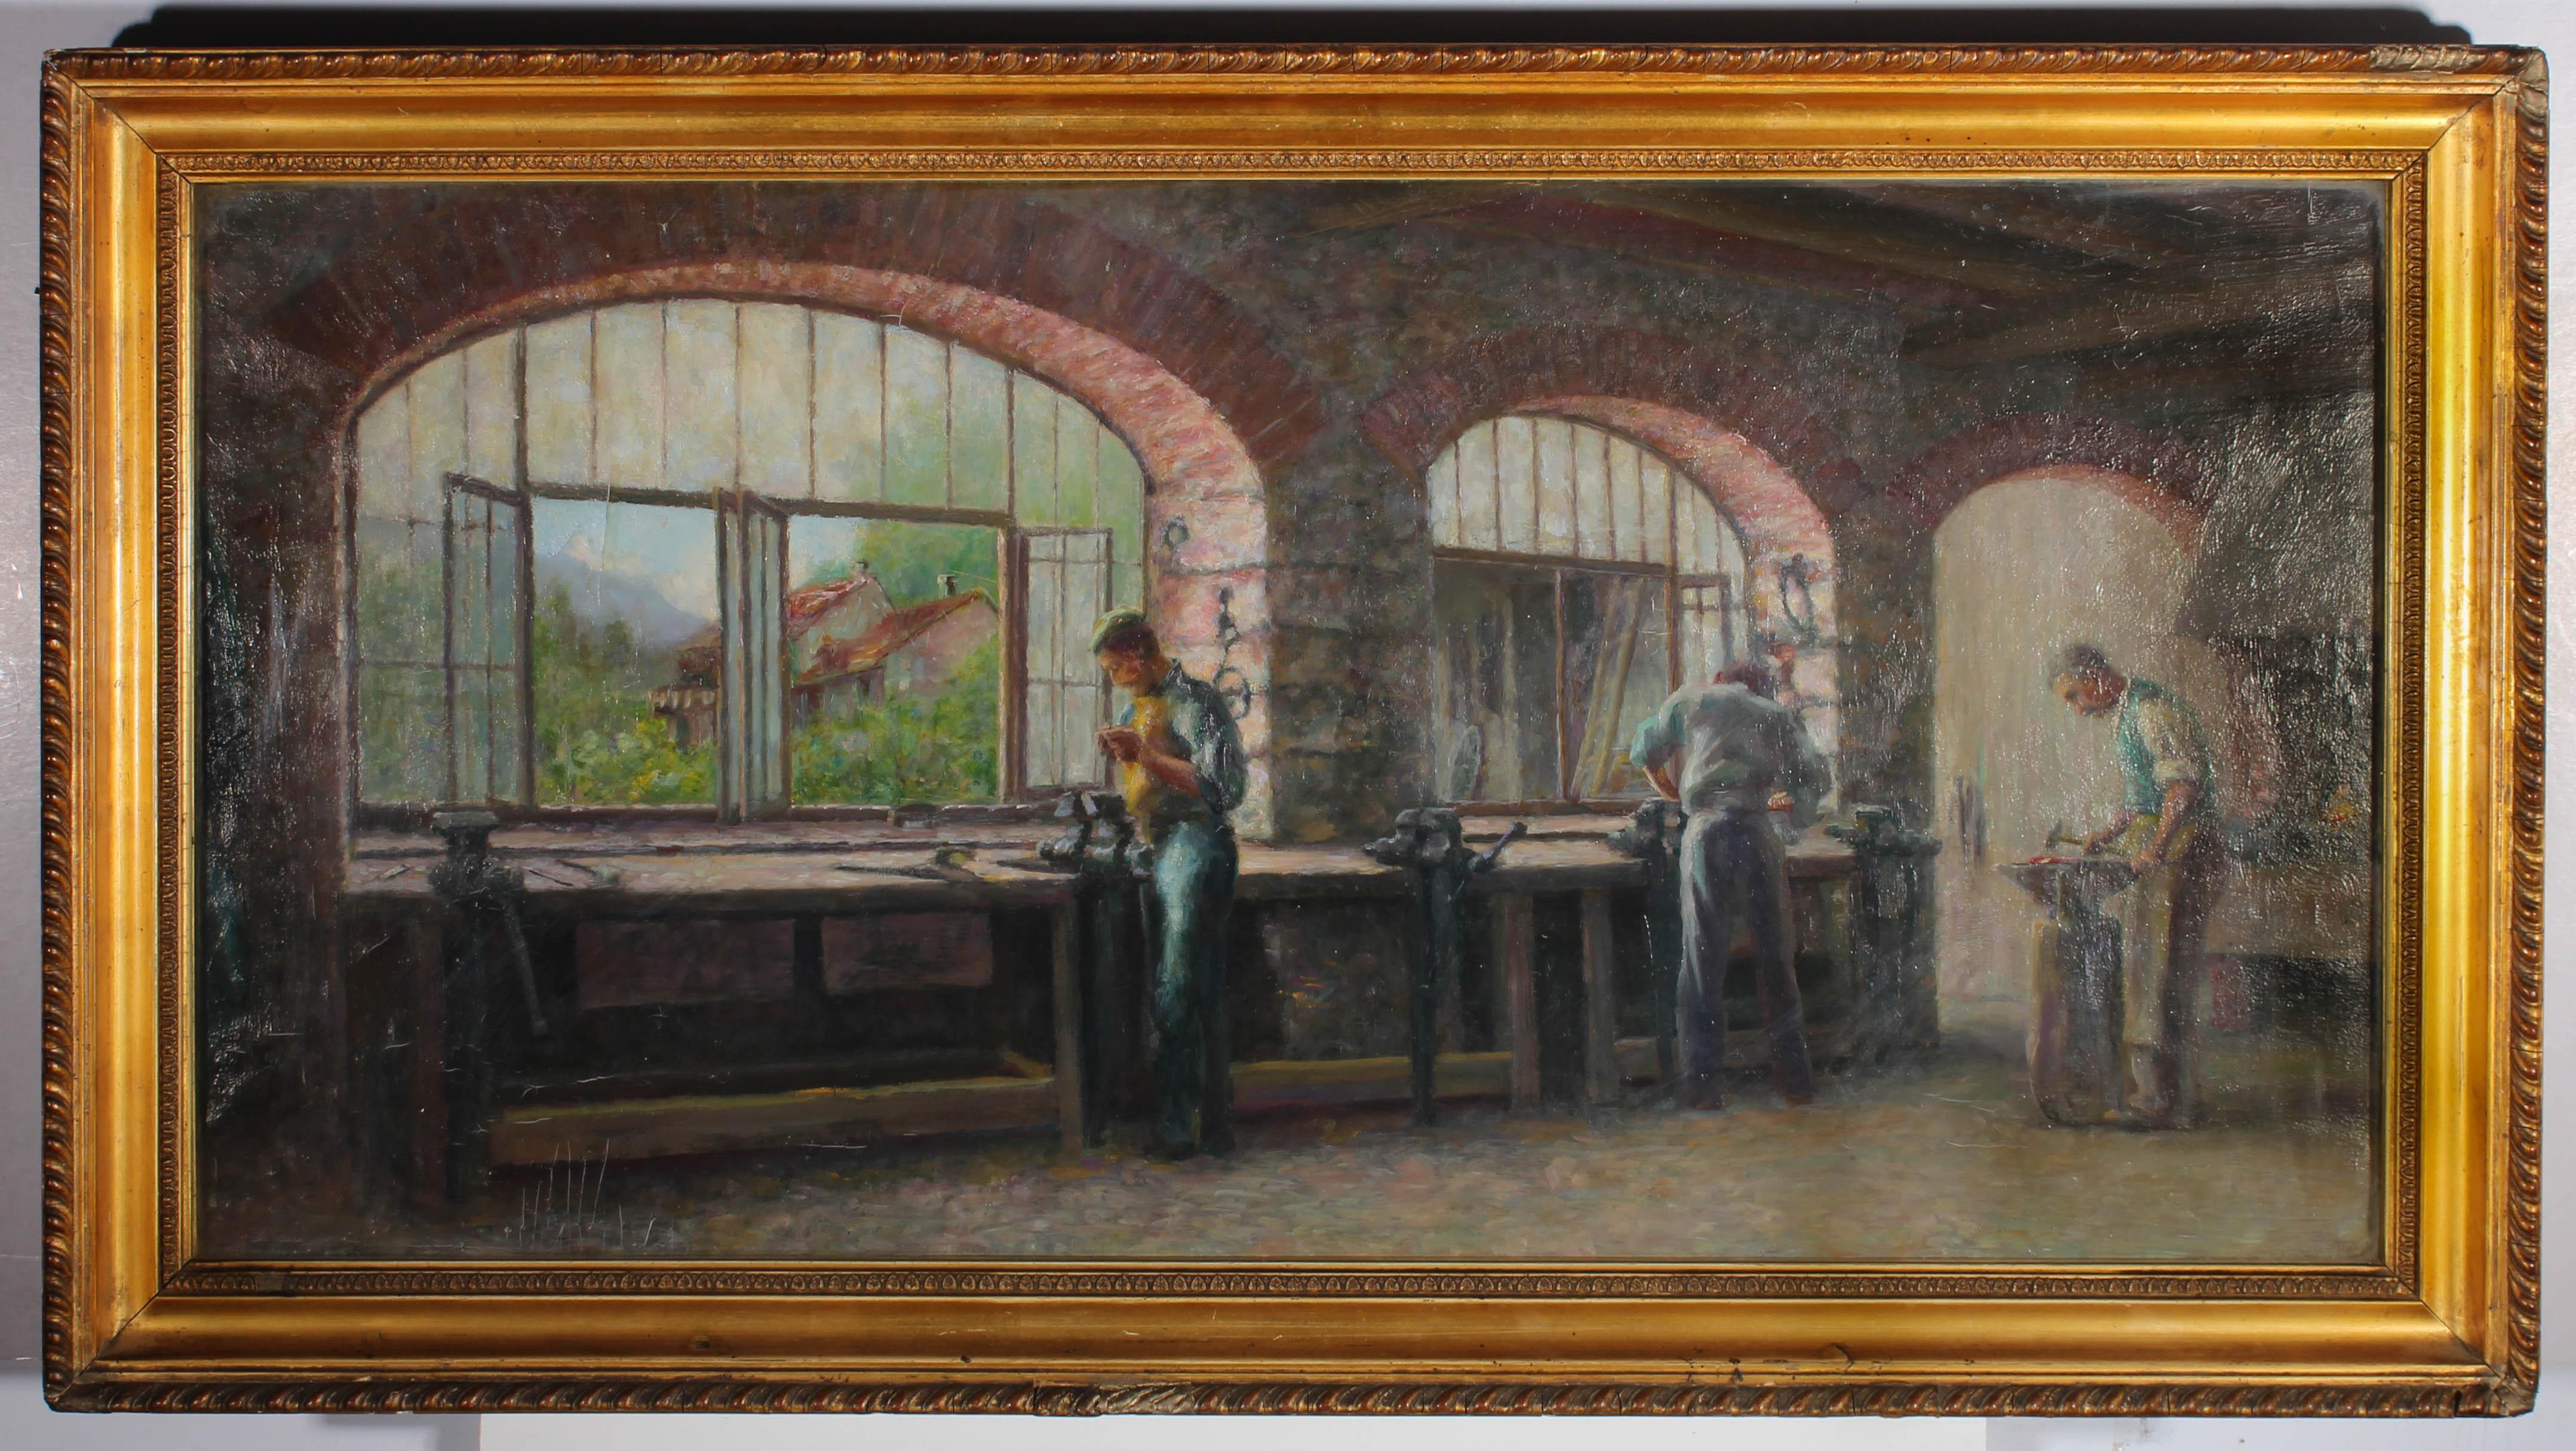 Une belle scène d'intérieur à l'huile du début du siècle montrant un atelier de forgeron, avec trois hommes travaillant à leur poste, avec de grandes fenêtres en arc inondant l'espace de lumière naturelle et la verdure de l'extérieur ajoutant de la